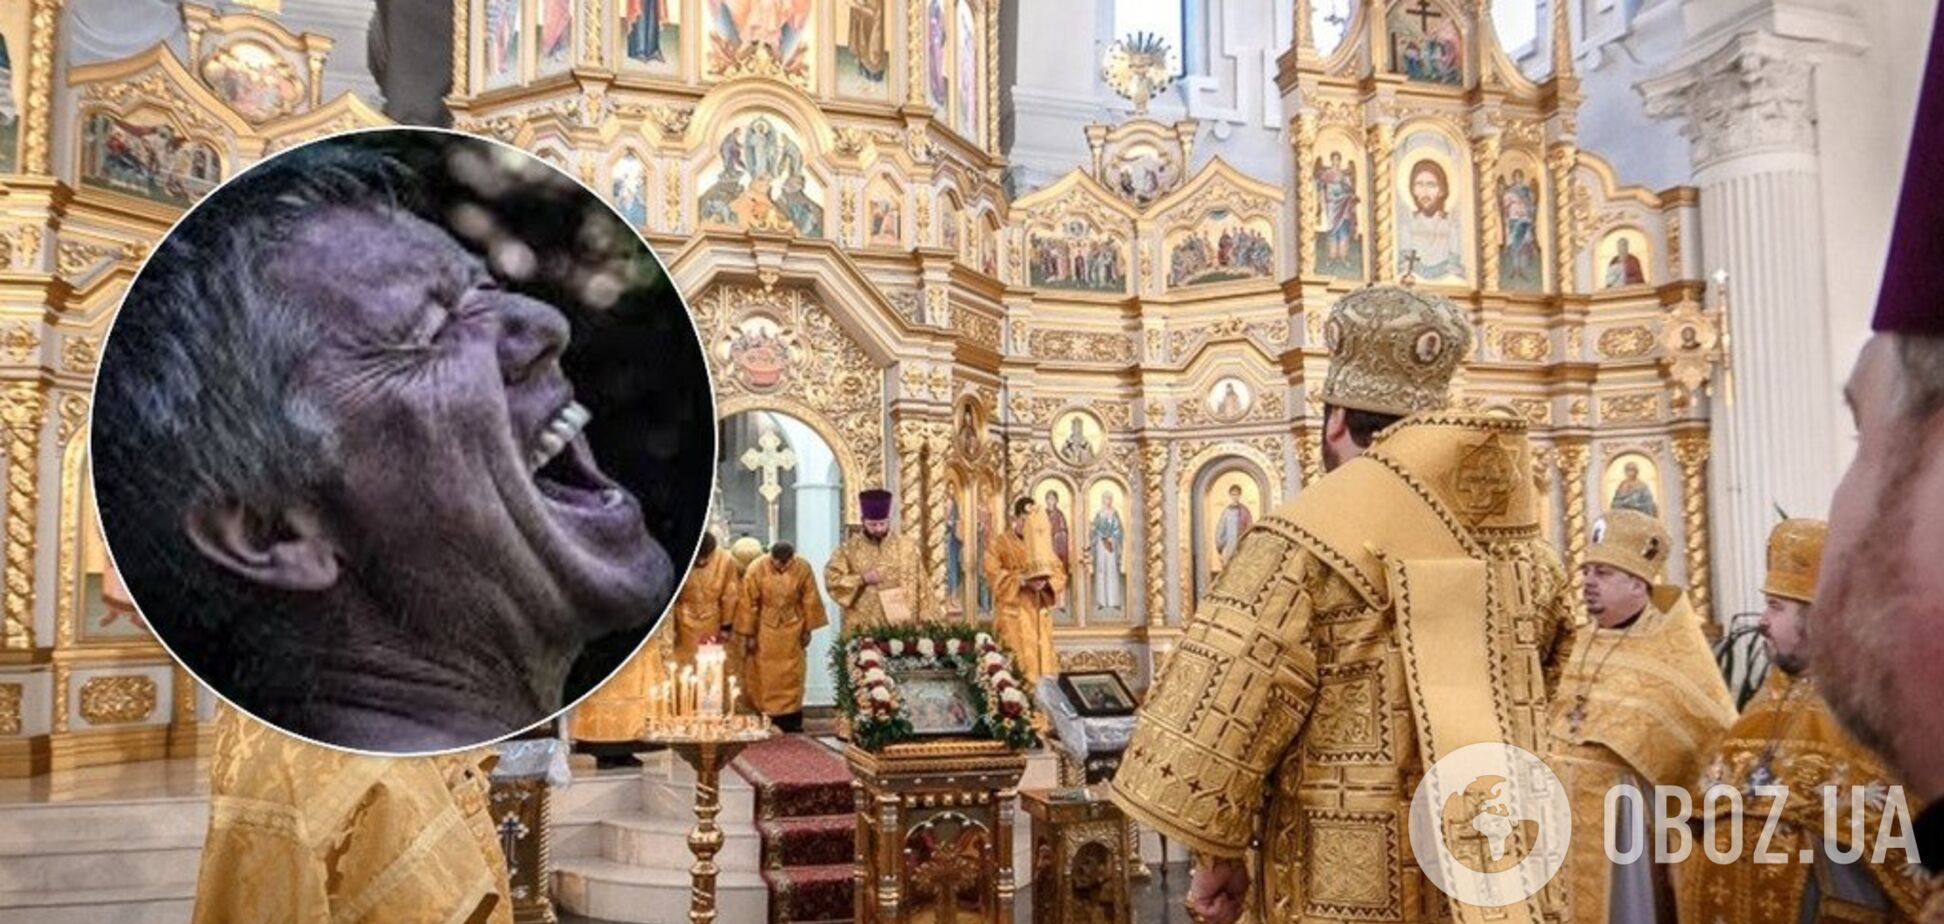 'Бес попутал': в Харькове мужчина устроил в храме жуткий погром. Видео